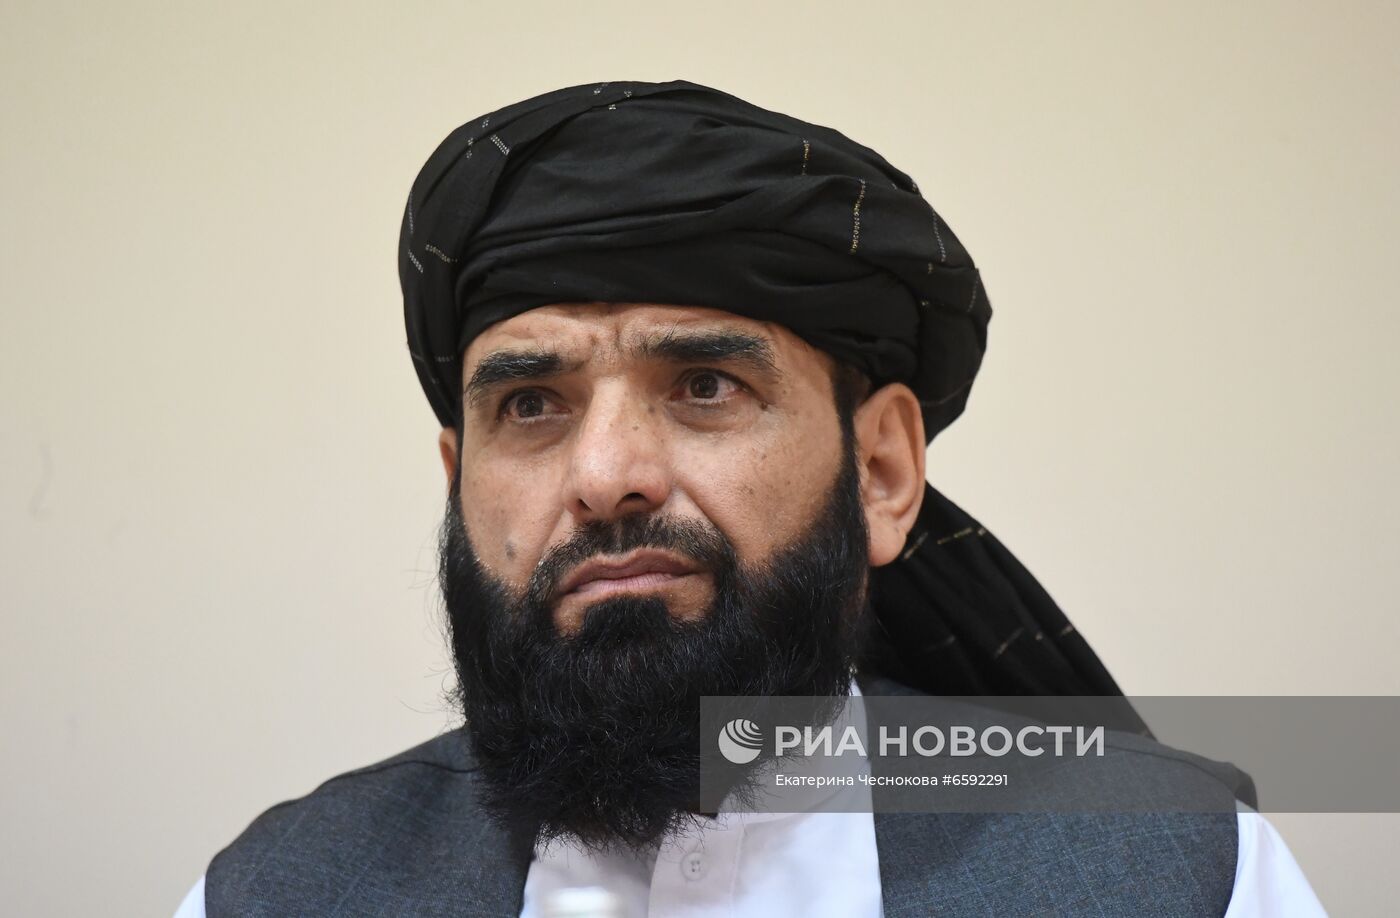 П/к делегации политического офиса движения "Талибан" (запрещено в РФ) в Москве